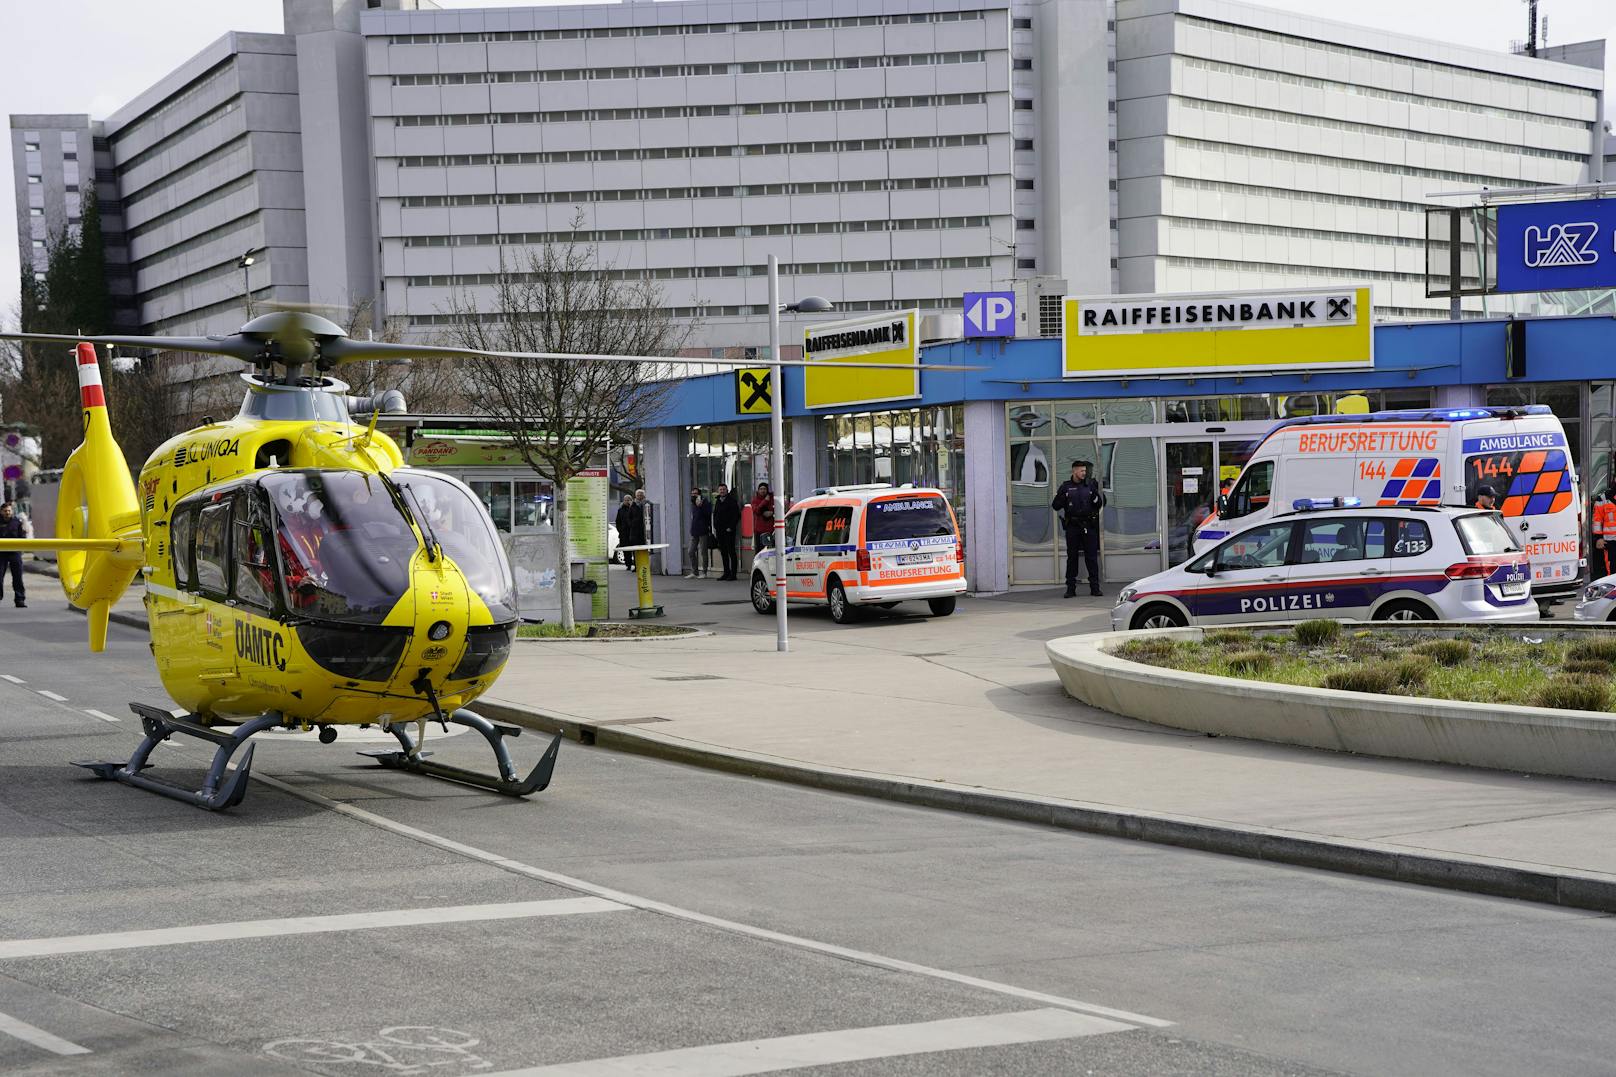 Die verletzte Frau wurde notfallmedizinisch versorgt und ins Spital geflogen.